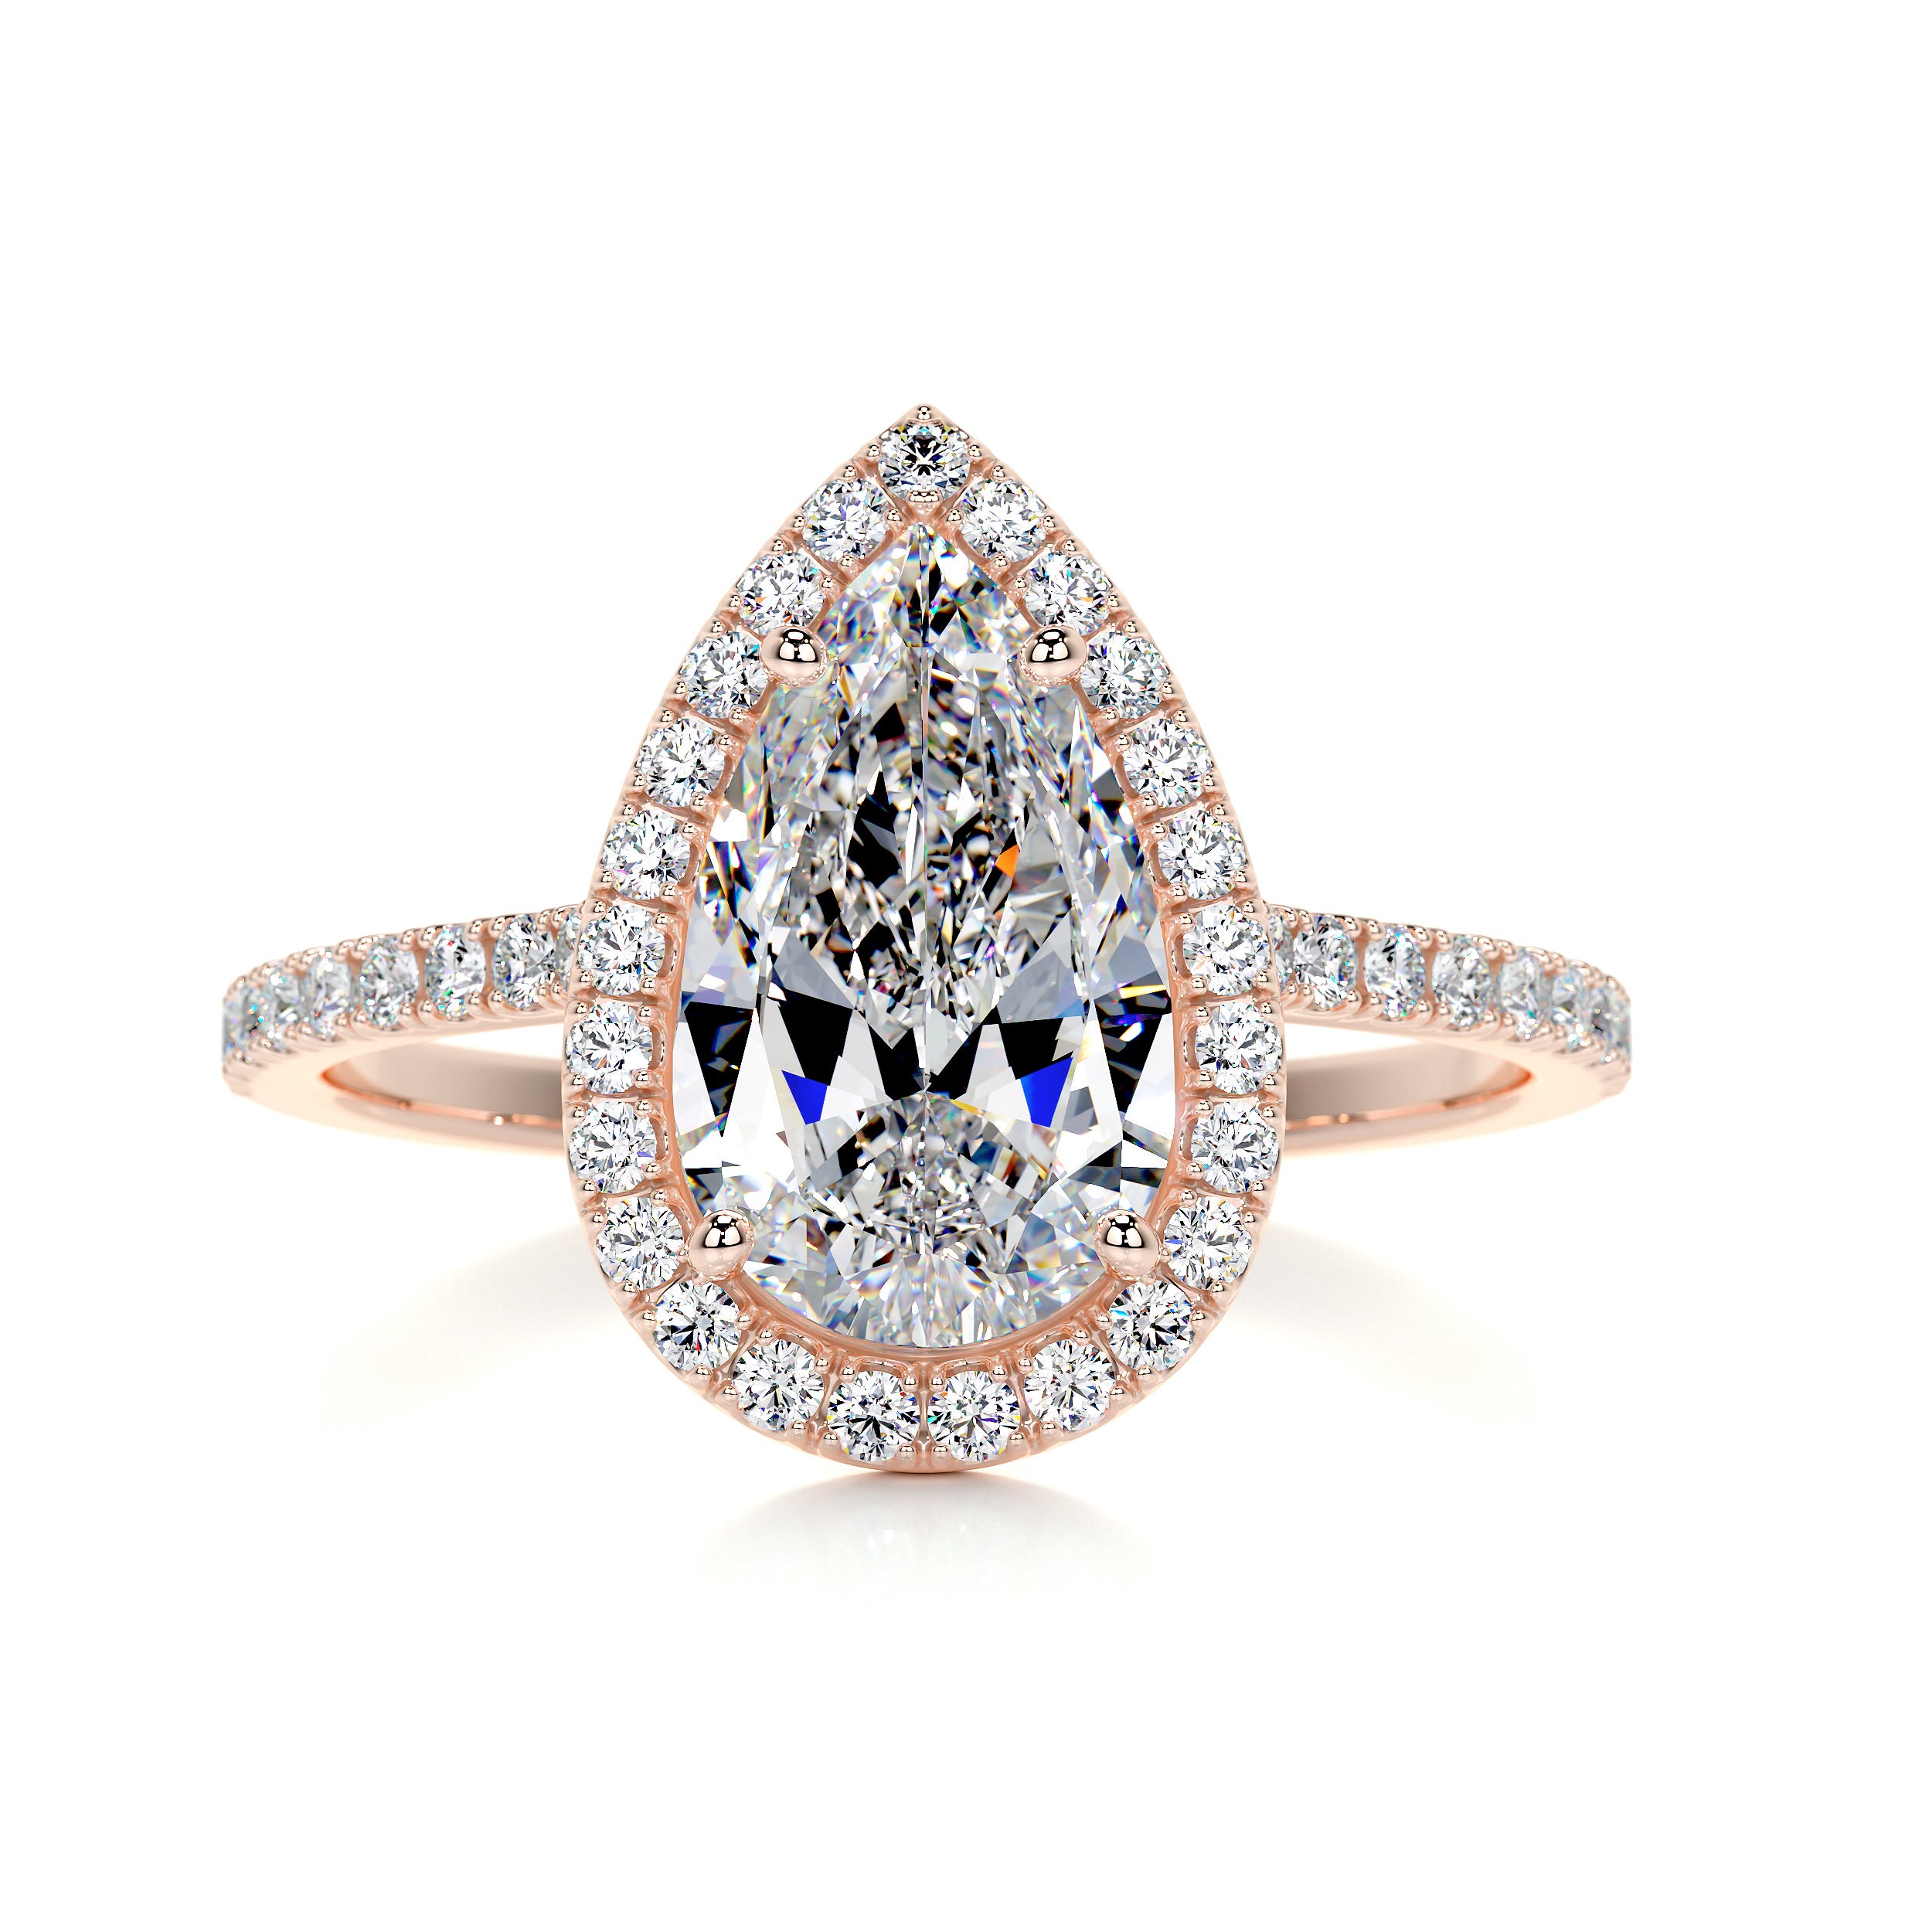 Sophia Moissanite & Diamonds Ring -14K Rose Gold